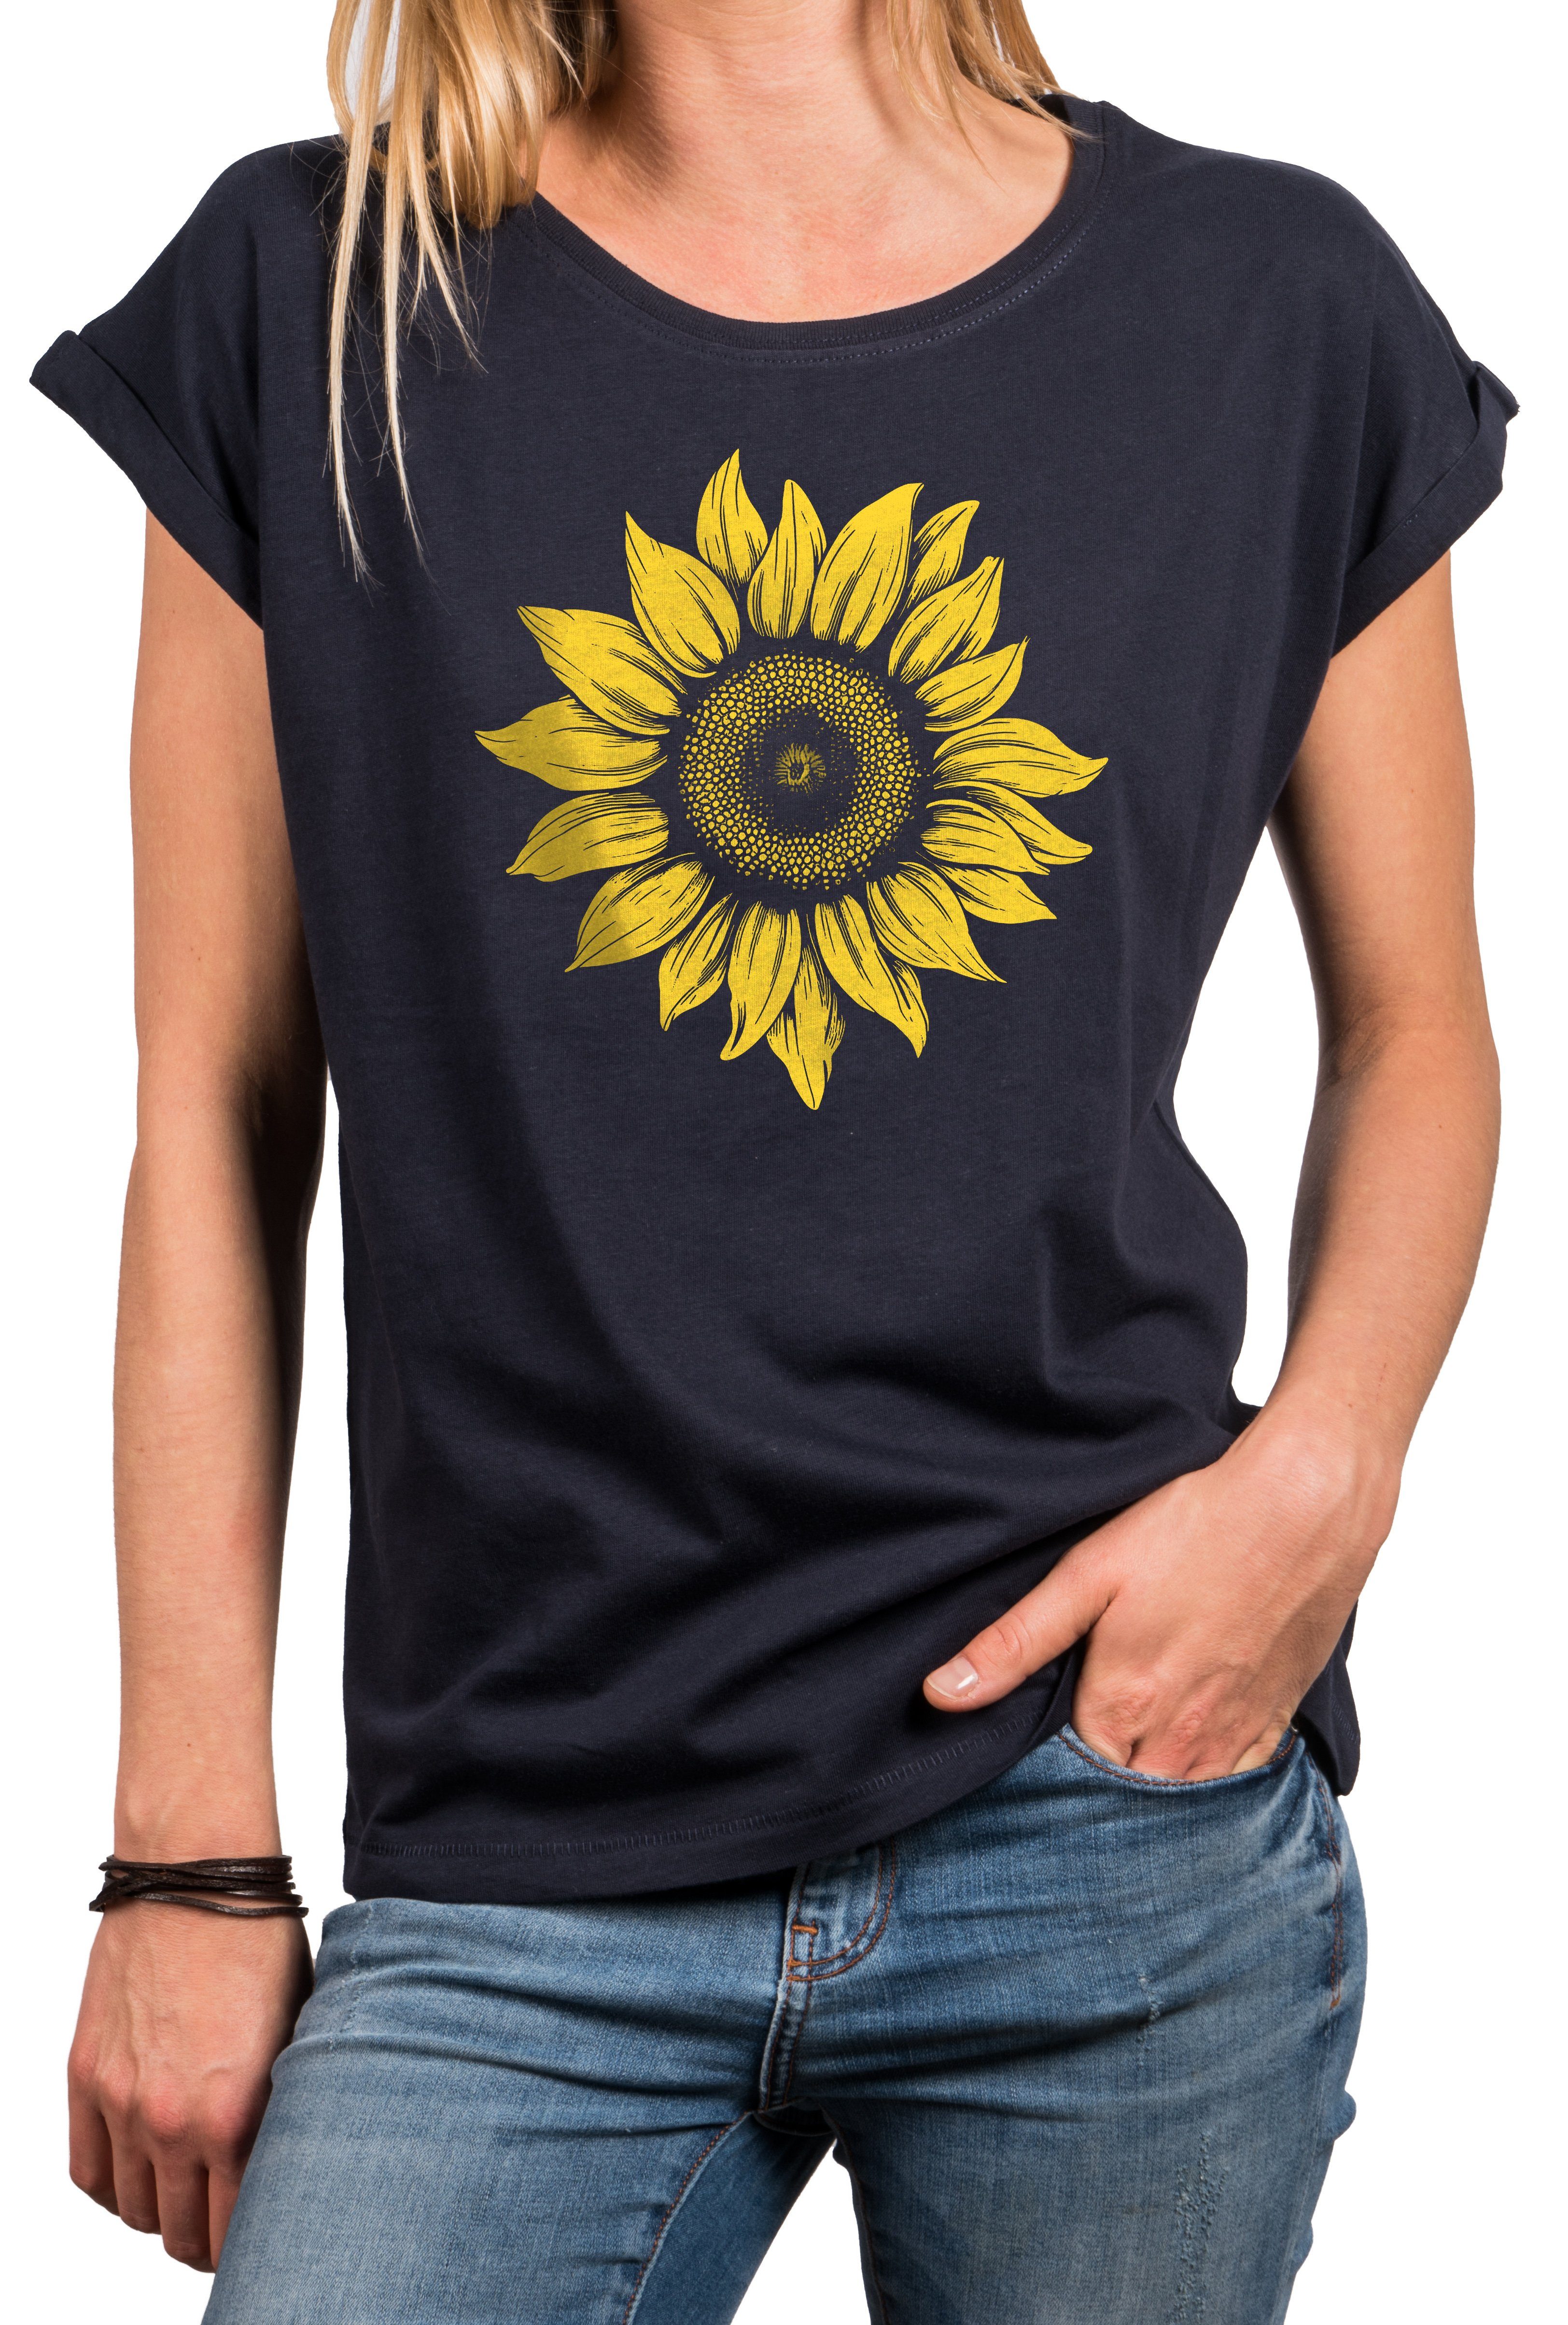 MAKAYA Print-Shirt Damen Blumenpint Sonnenblume Blumen Motiv Blumenmuster Sommer Top Baumwolle, große Größen Blau